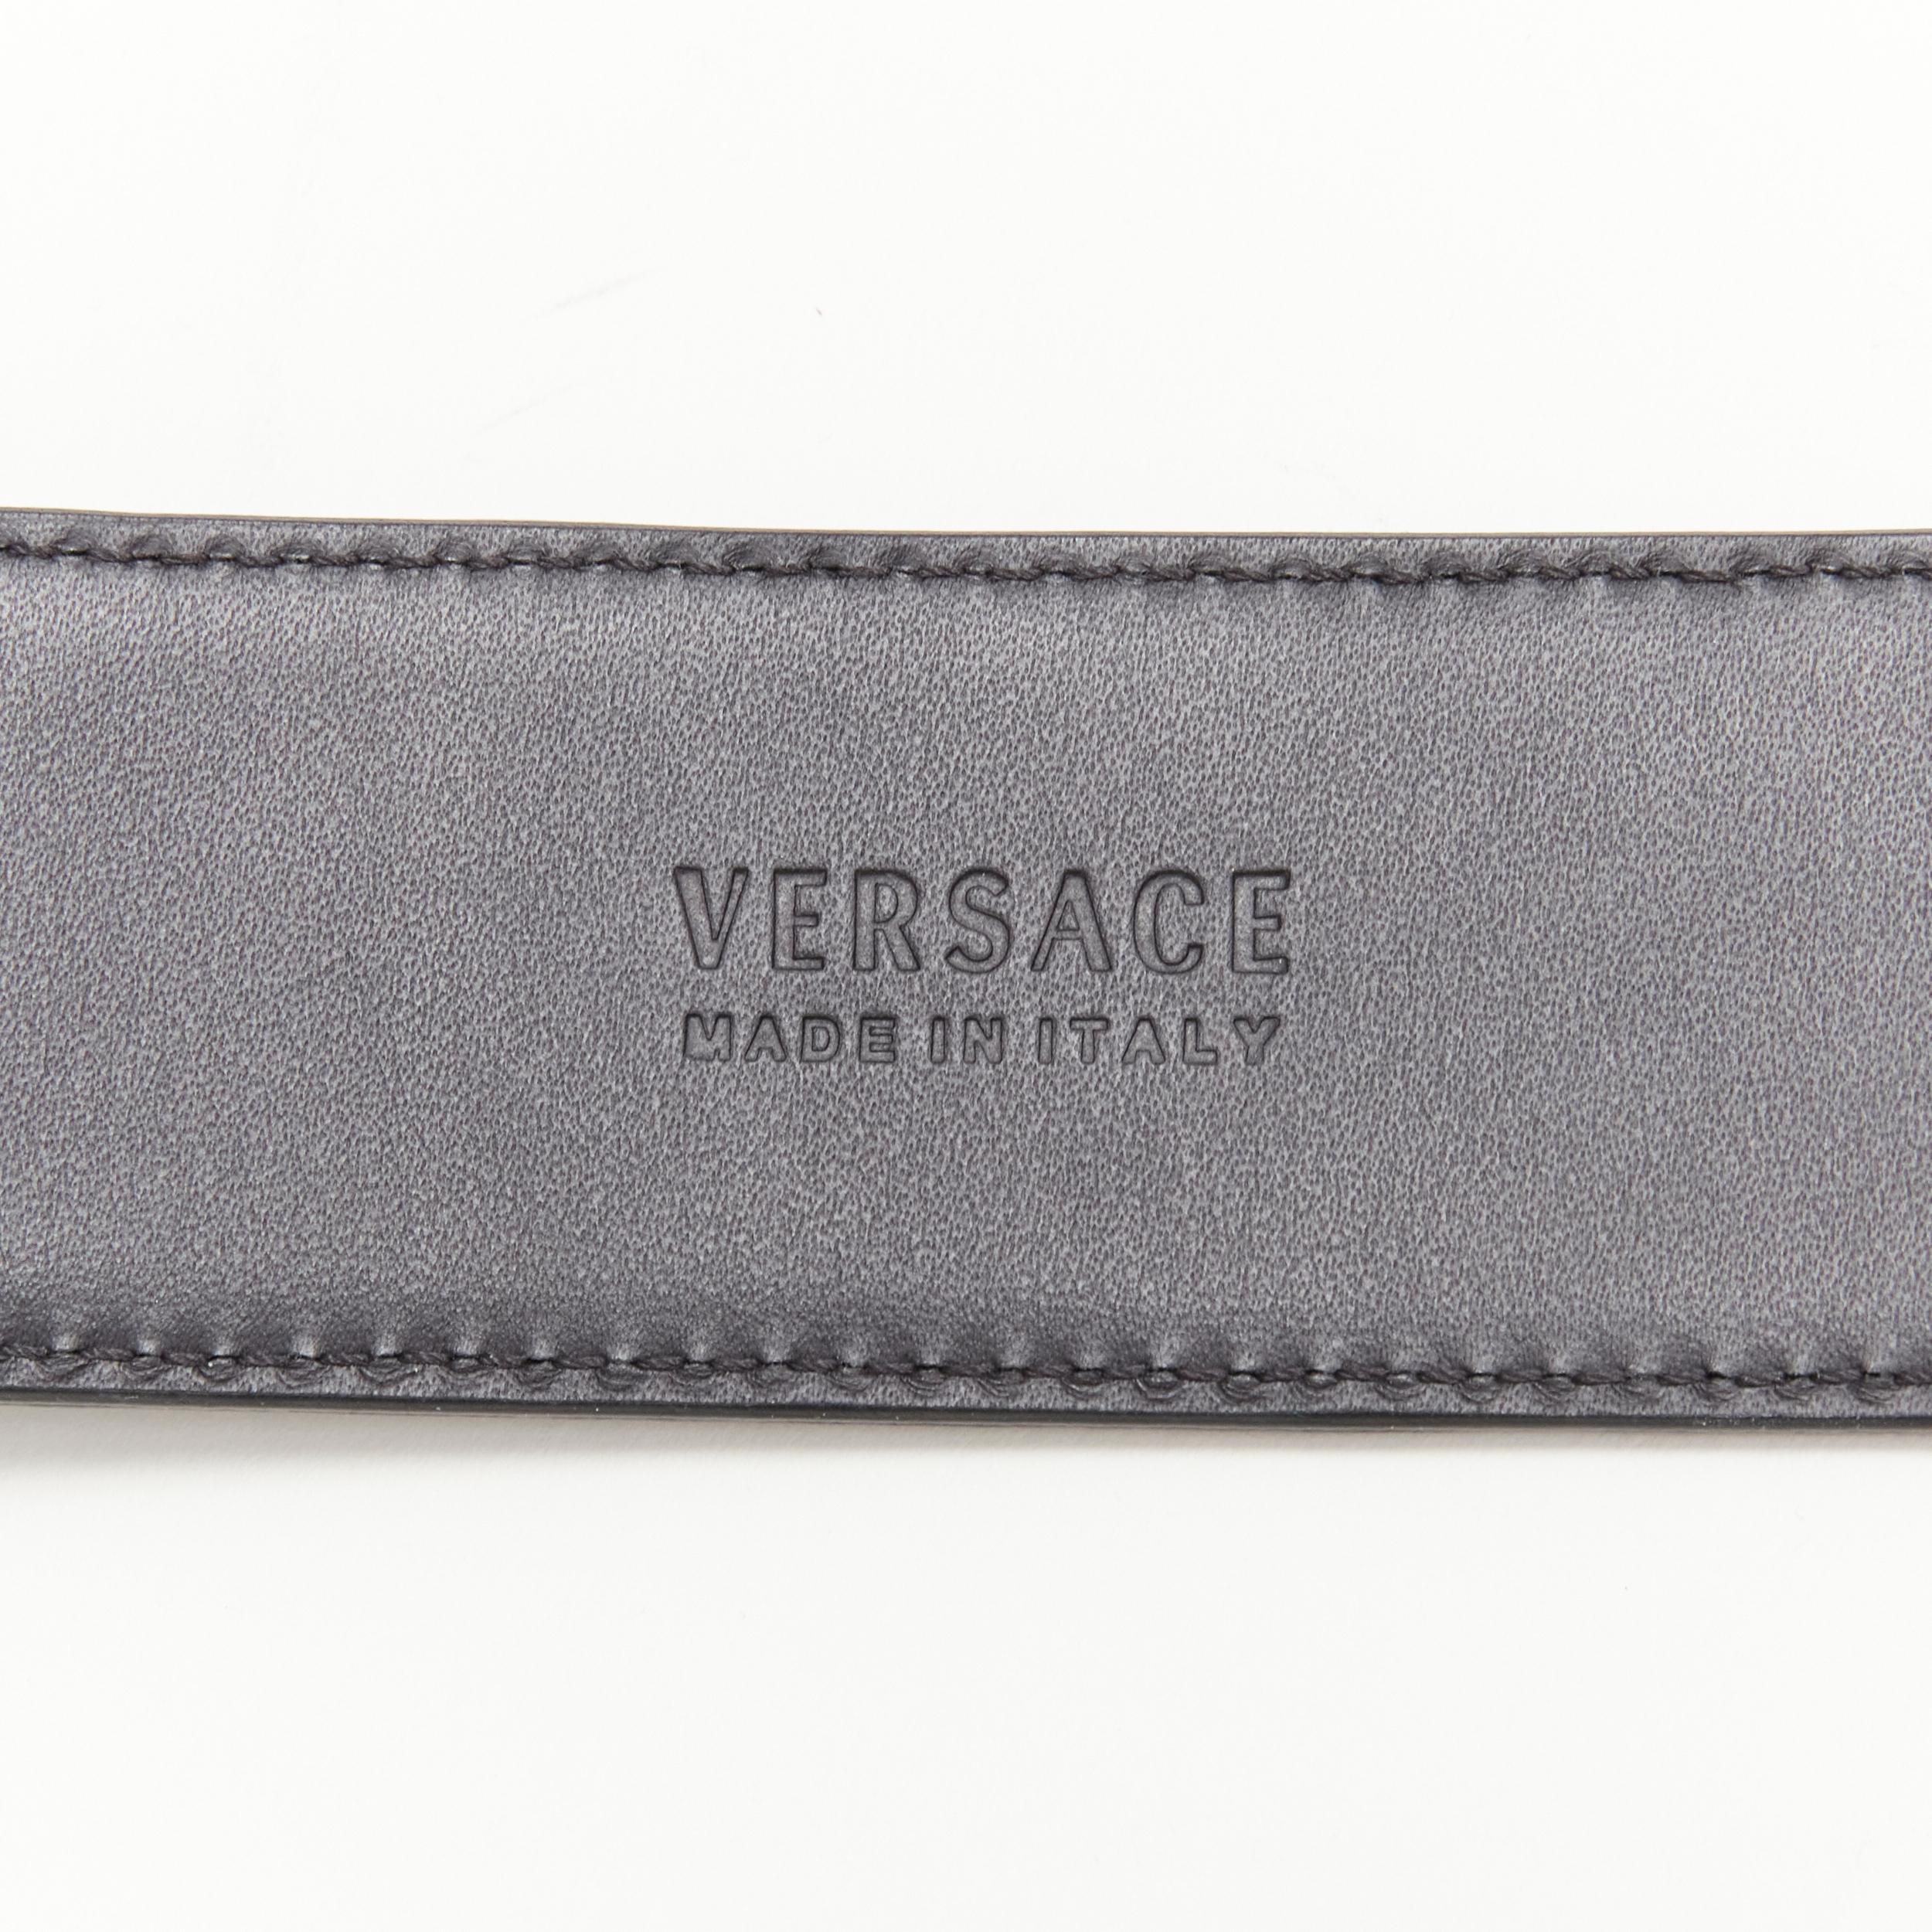 new VERSACE $1200 La Medusa gold buckle black croc leather belt 85cm 32-36